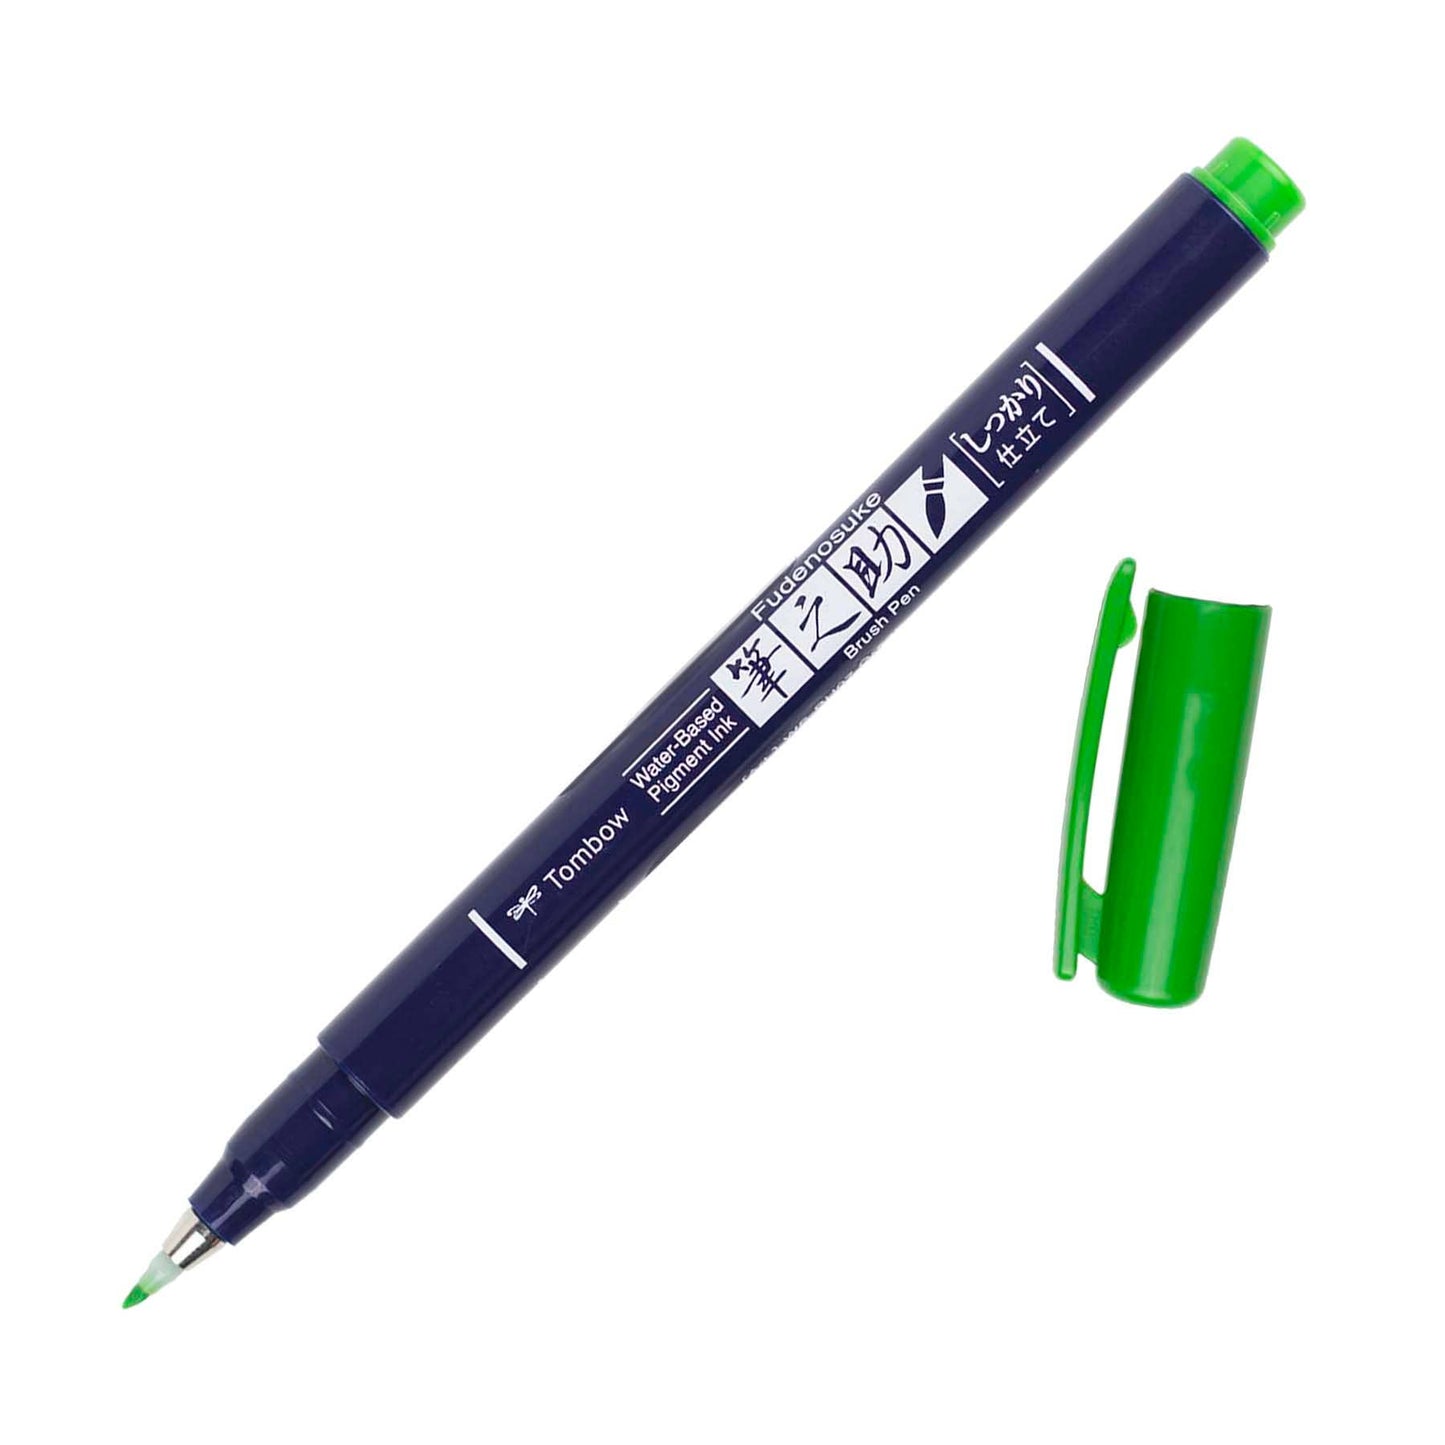 Fudenosuke Calligraphy Brush Pen - Open Stock